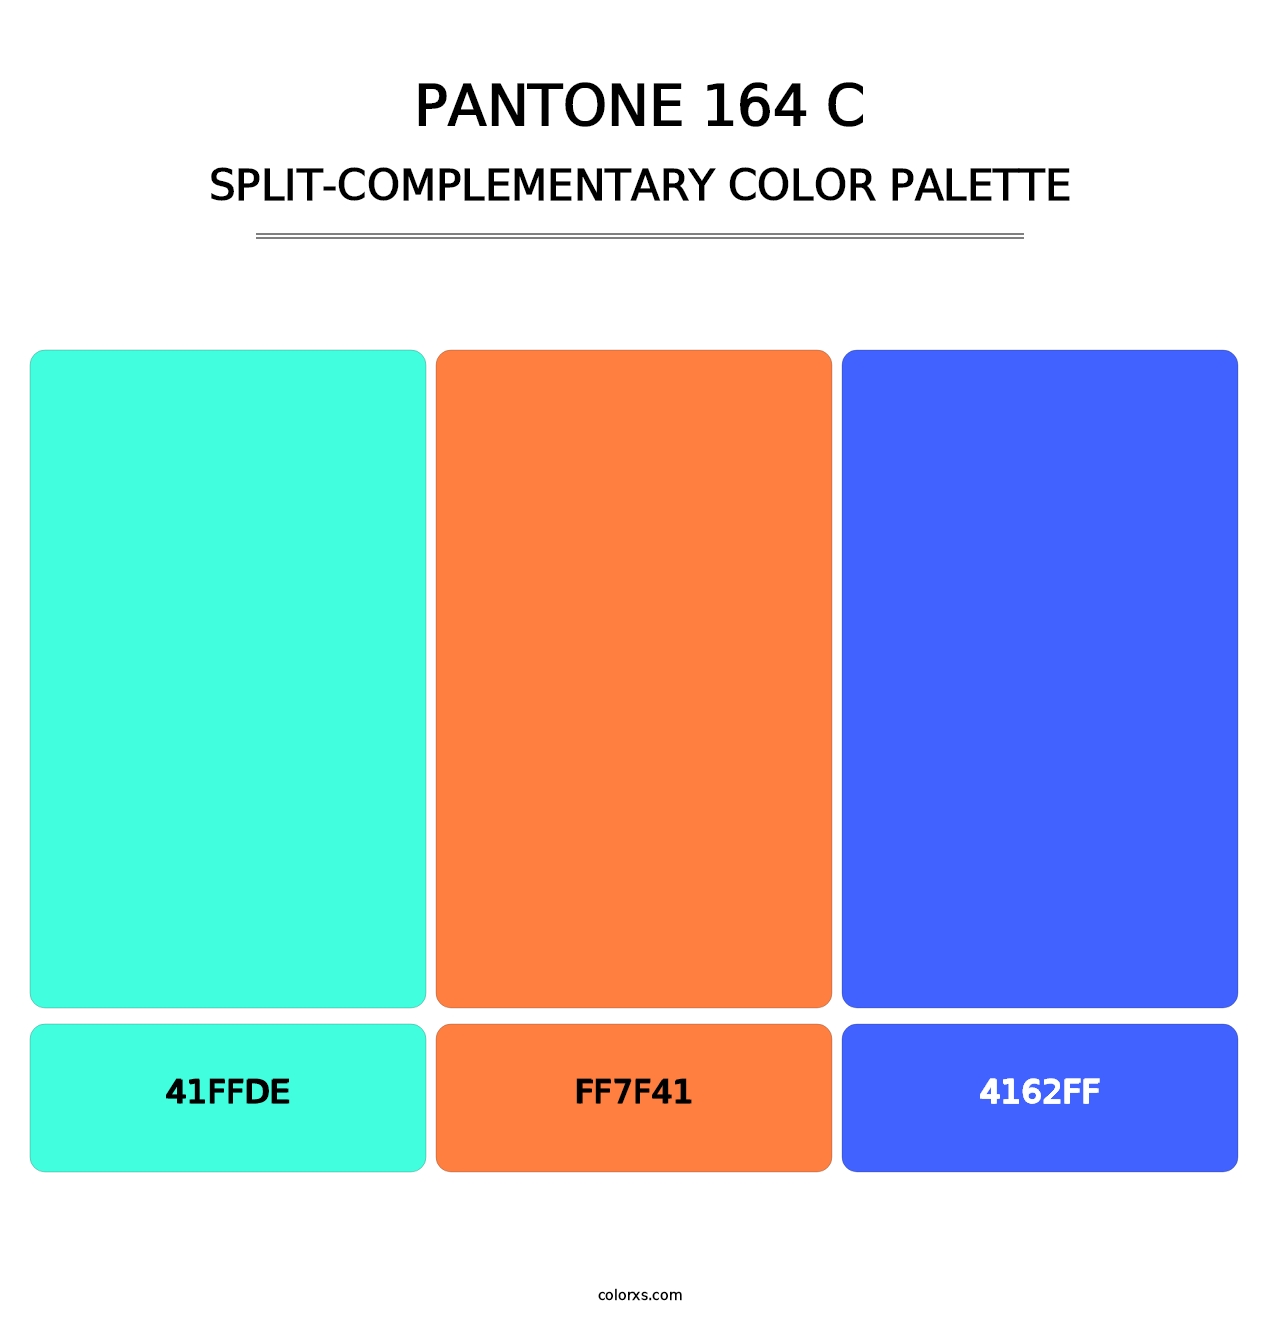 PANTONE 164 C - Split-Complementary Color Palette